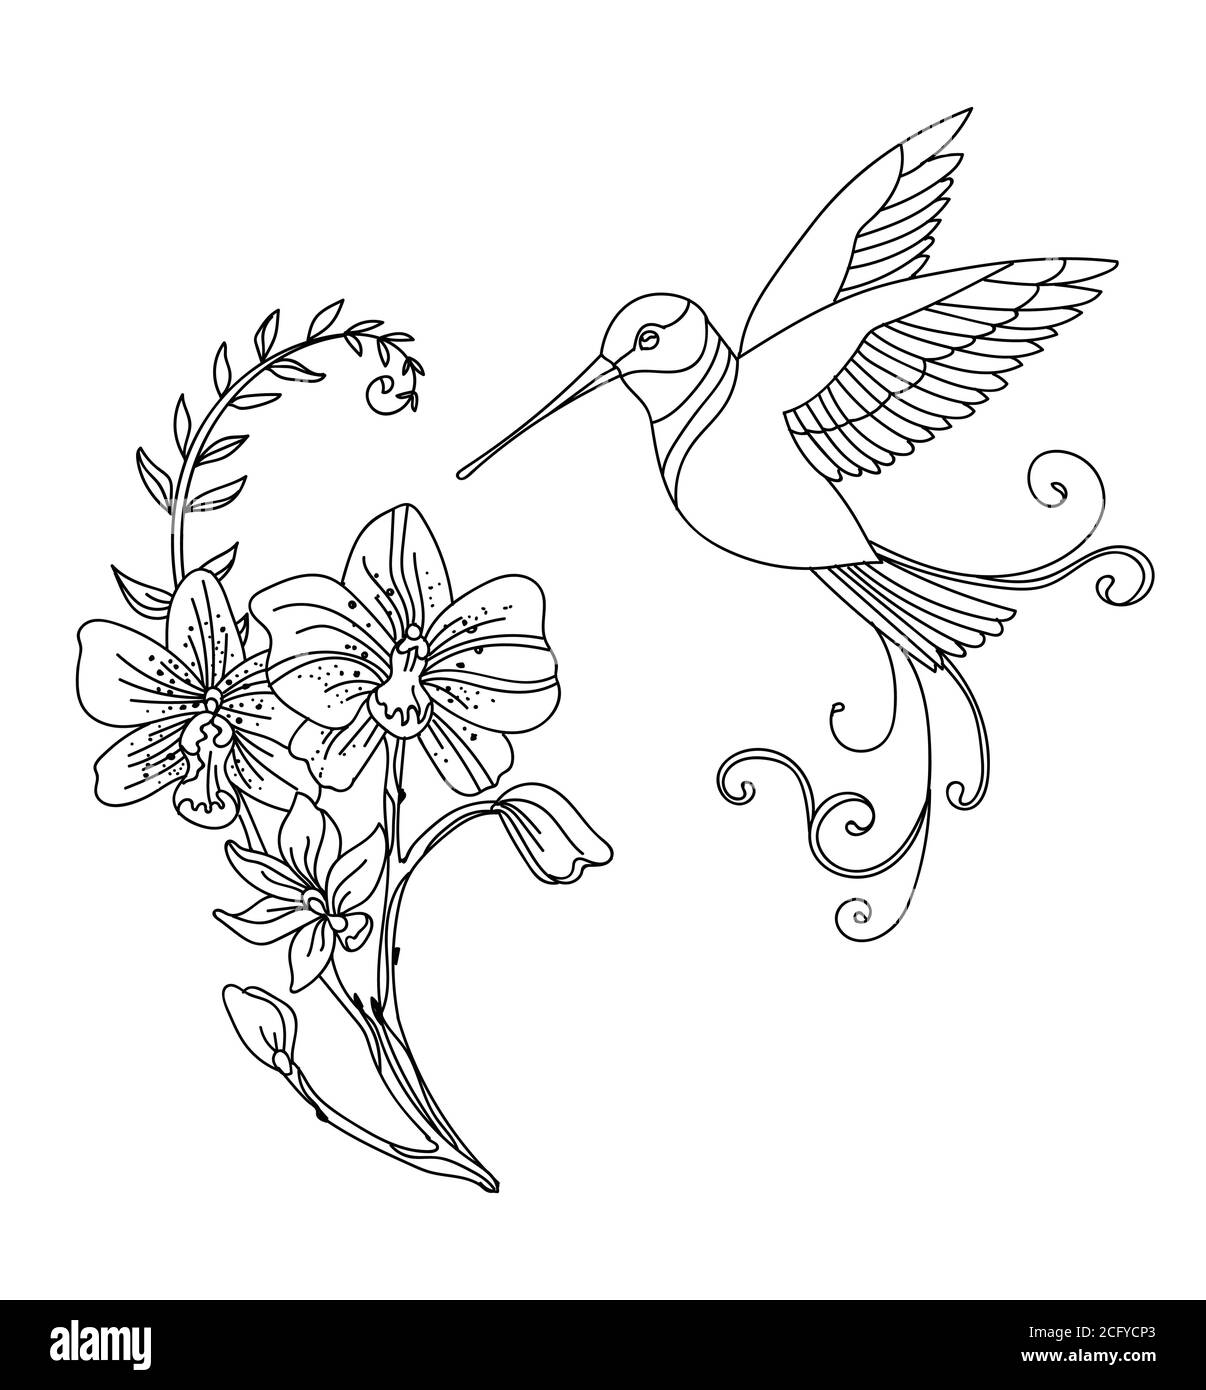 Linea vettoriale art colibri uccello e fiori decorativi. Illustrazione del contorno isolata su bianco. Modello monocromatico disegnato a mano da un vettore per libro da colorare, Illustrazione Vettoriale